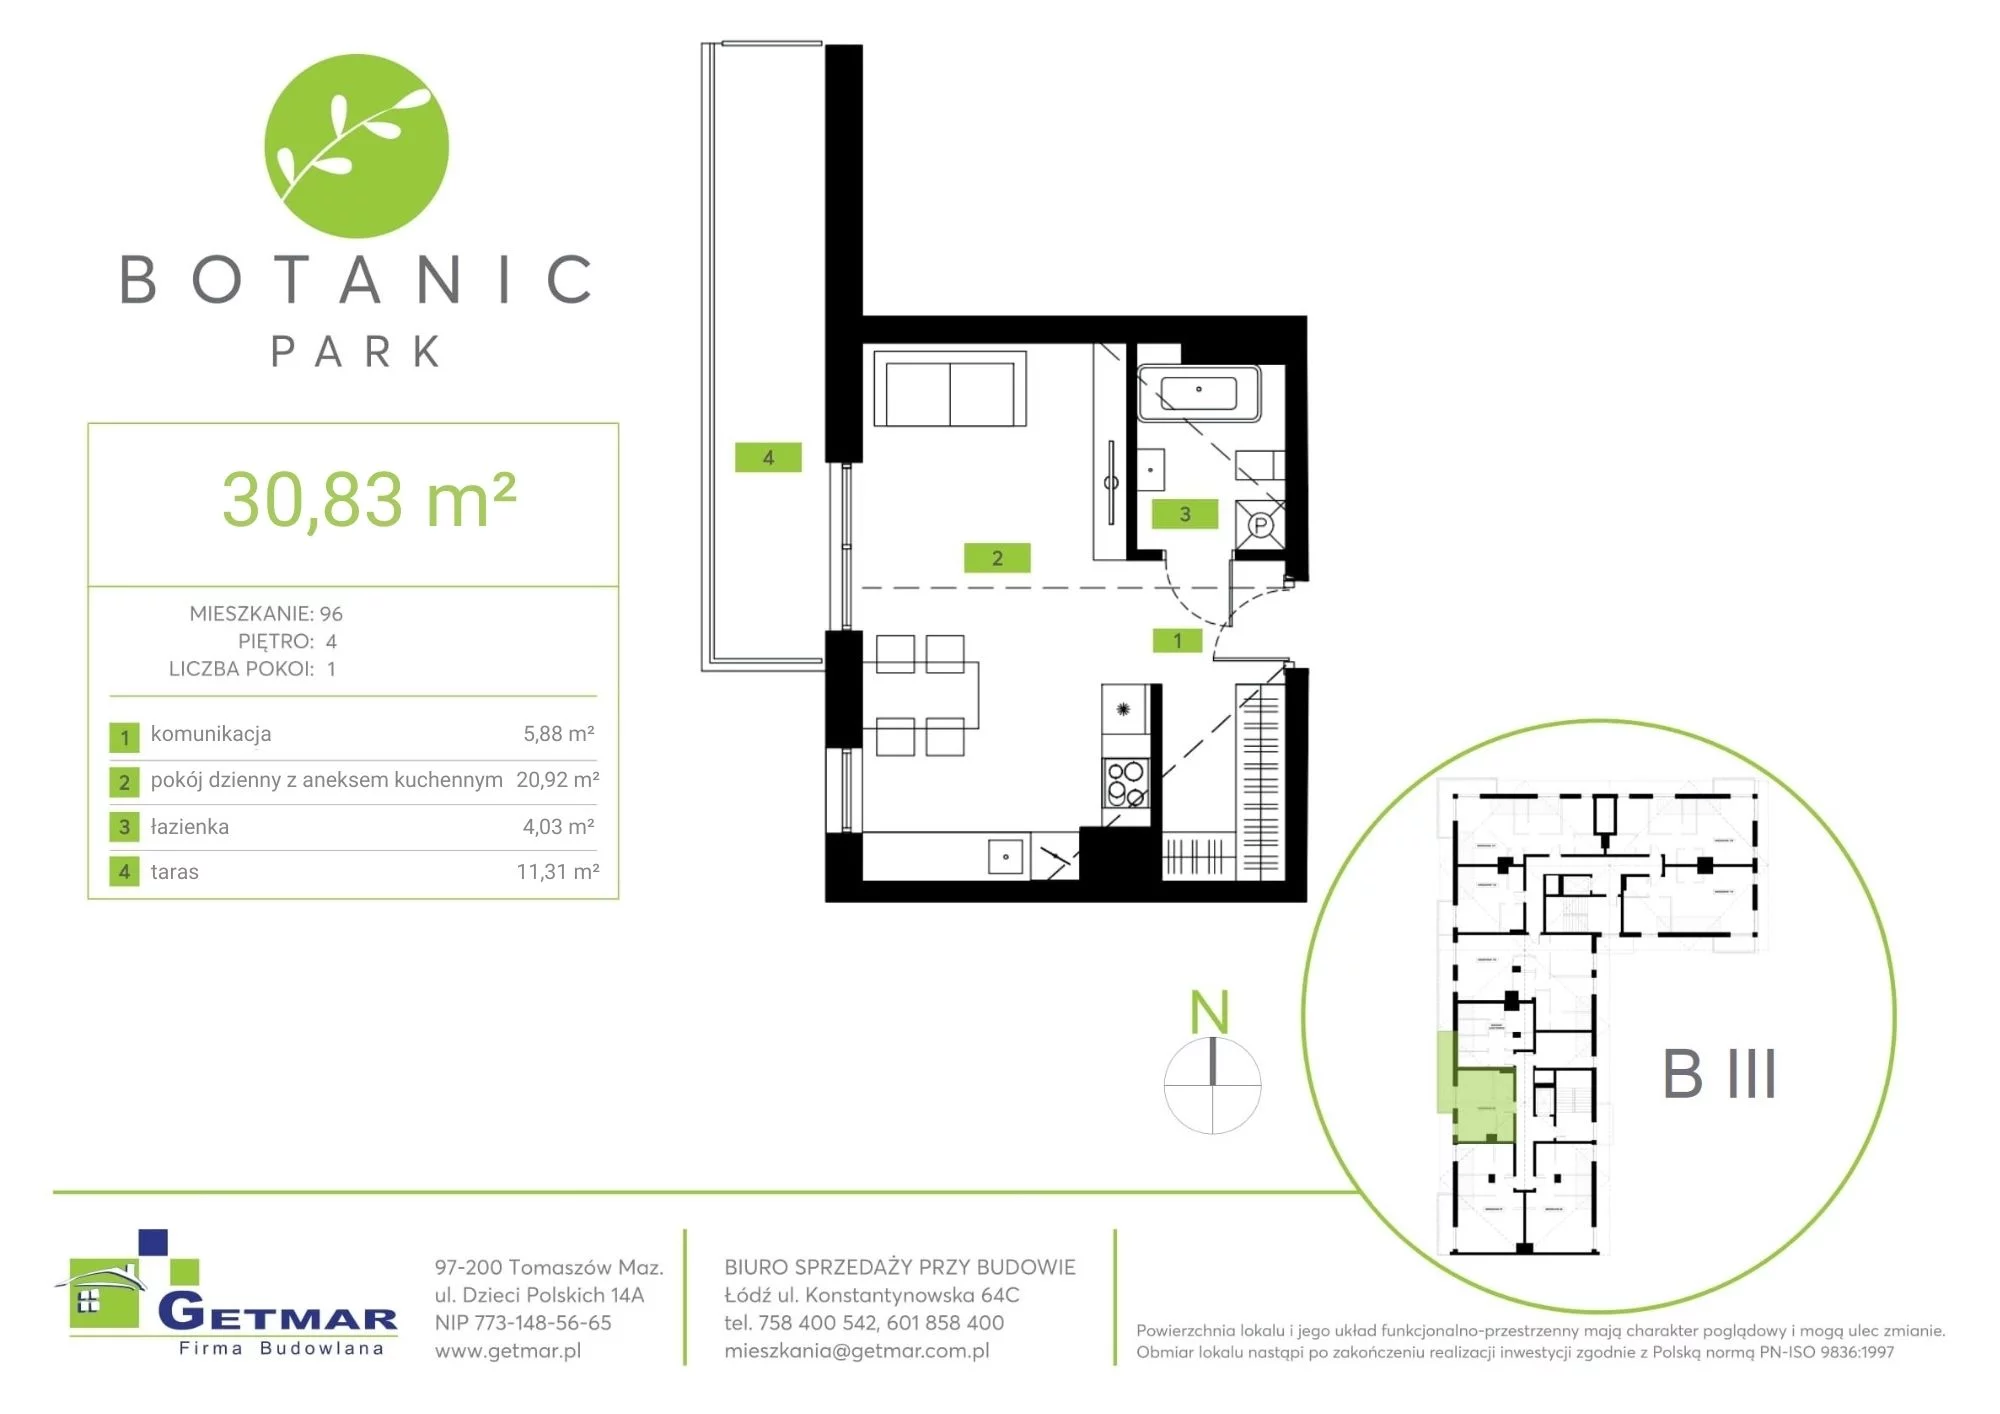 Mieszkanie 30,83 m², piętro 4, oferta nr 96, Botanic Park, Łódź, Polesie, Złotno, ul. Konstantynowska 64c